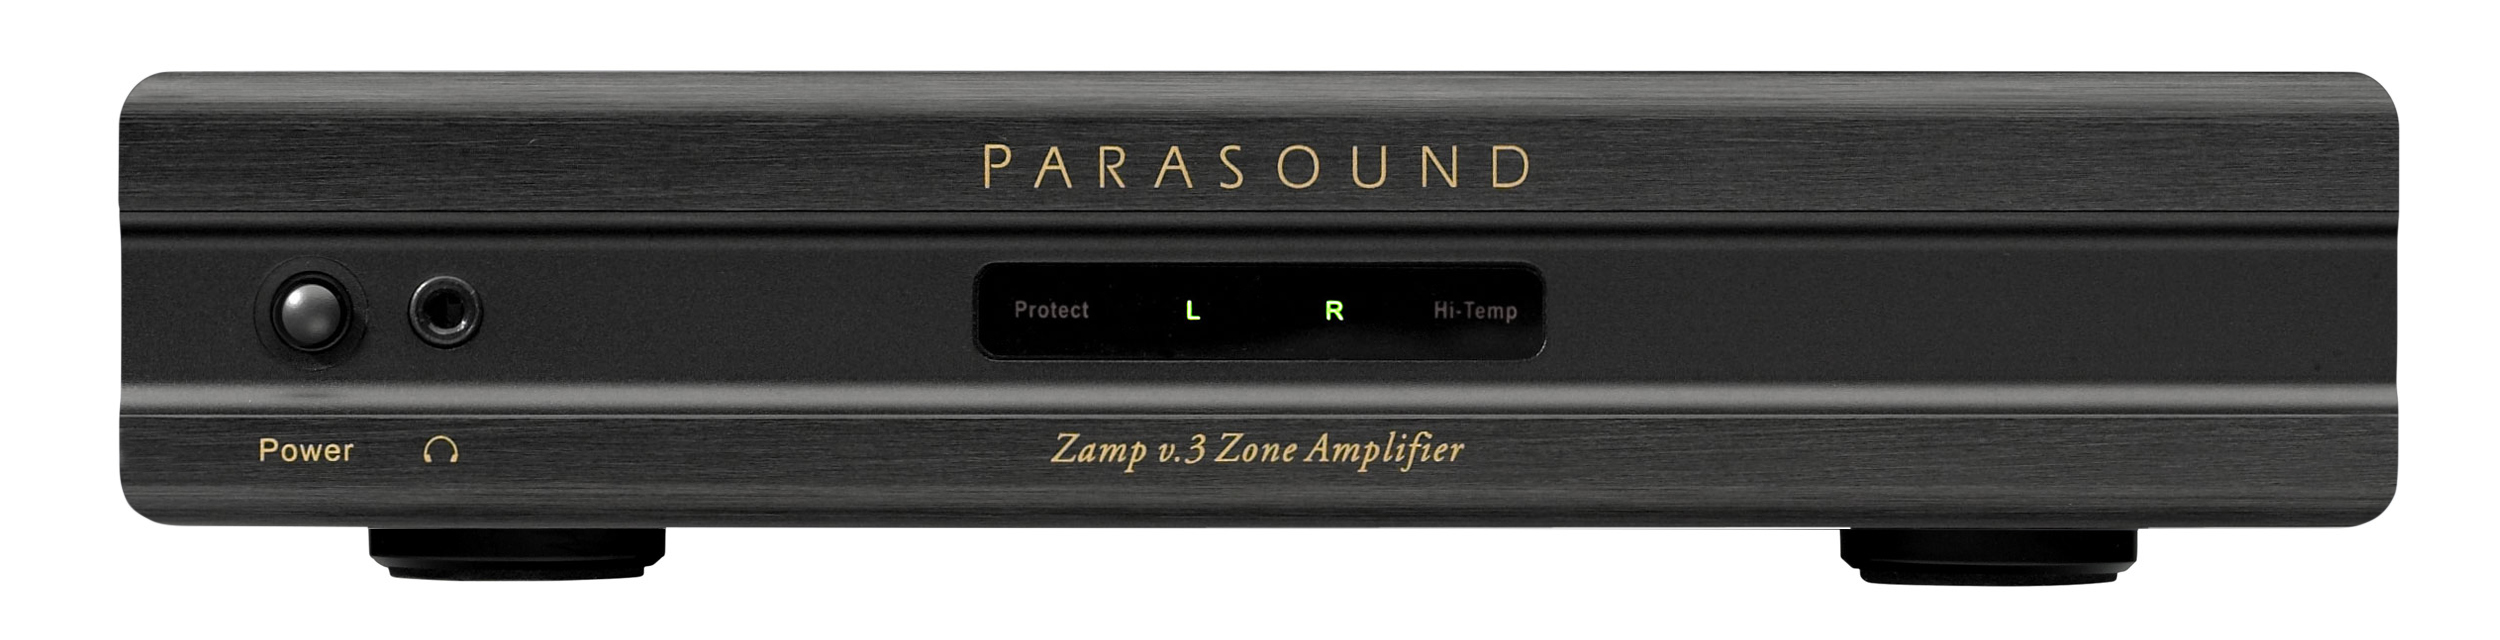 Parasound Zamp v3 black